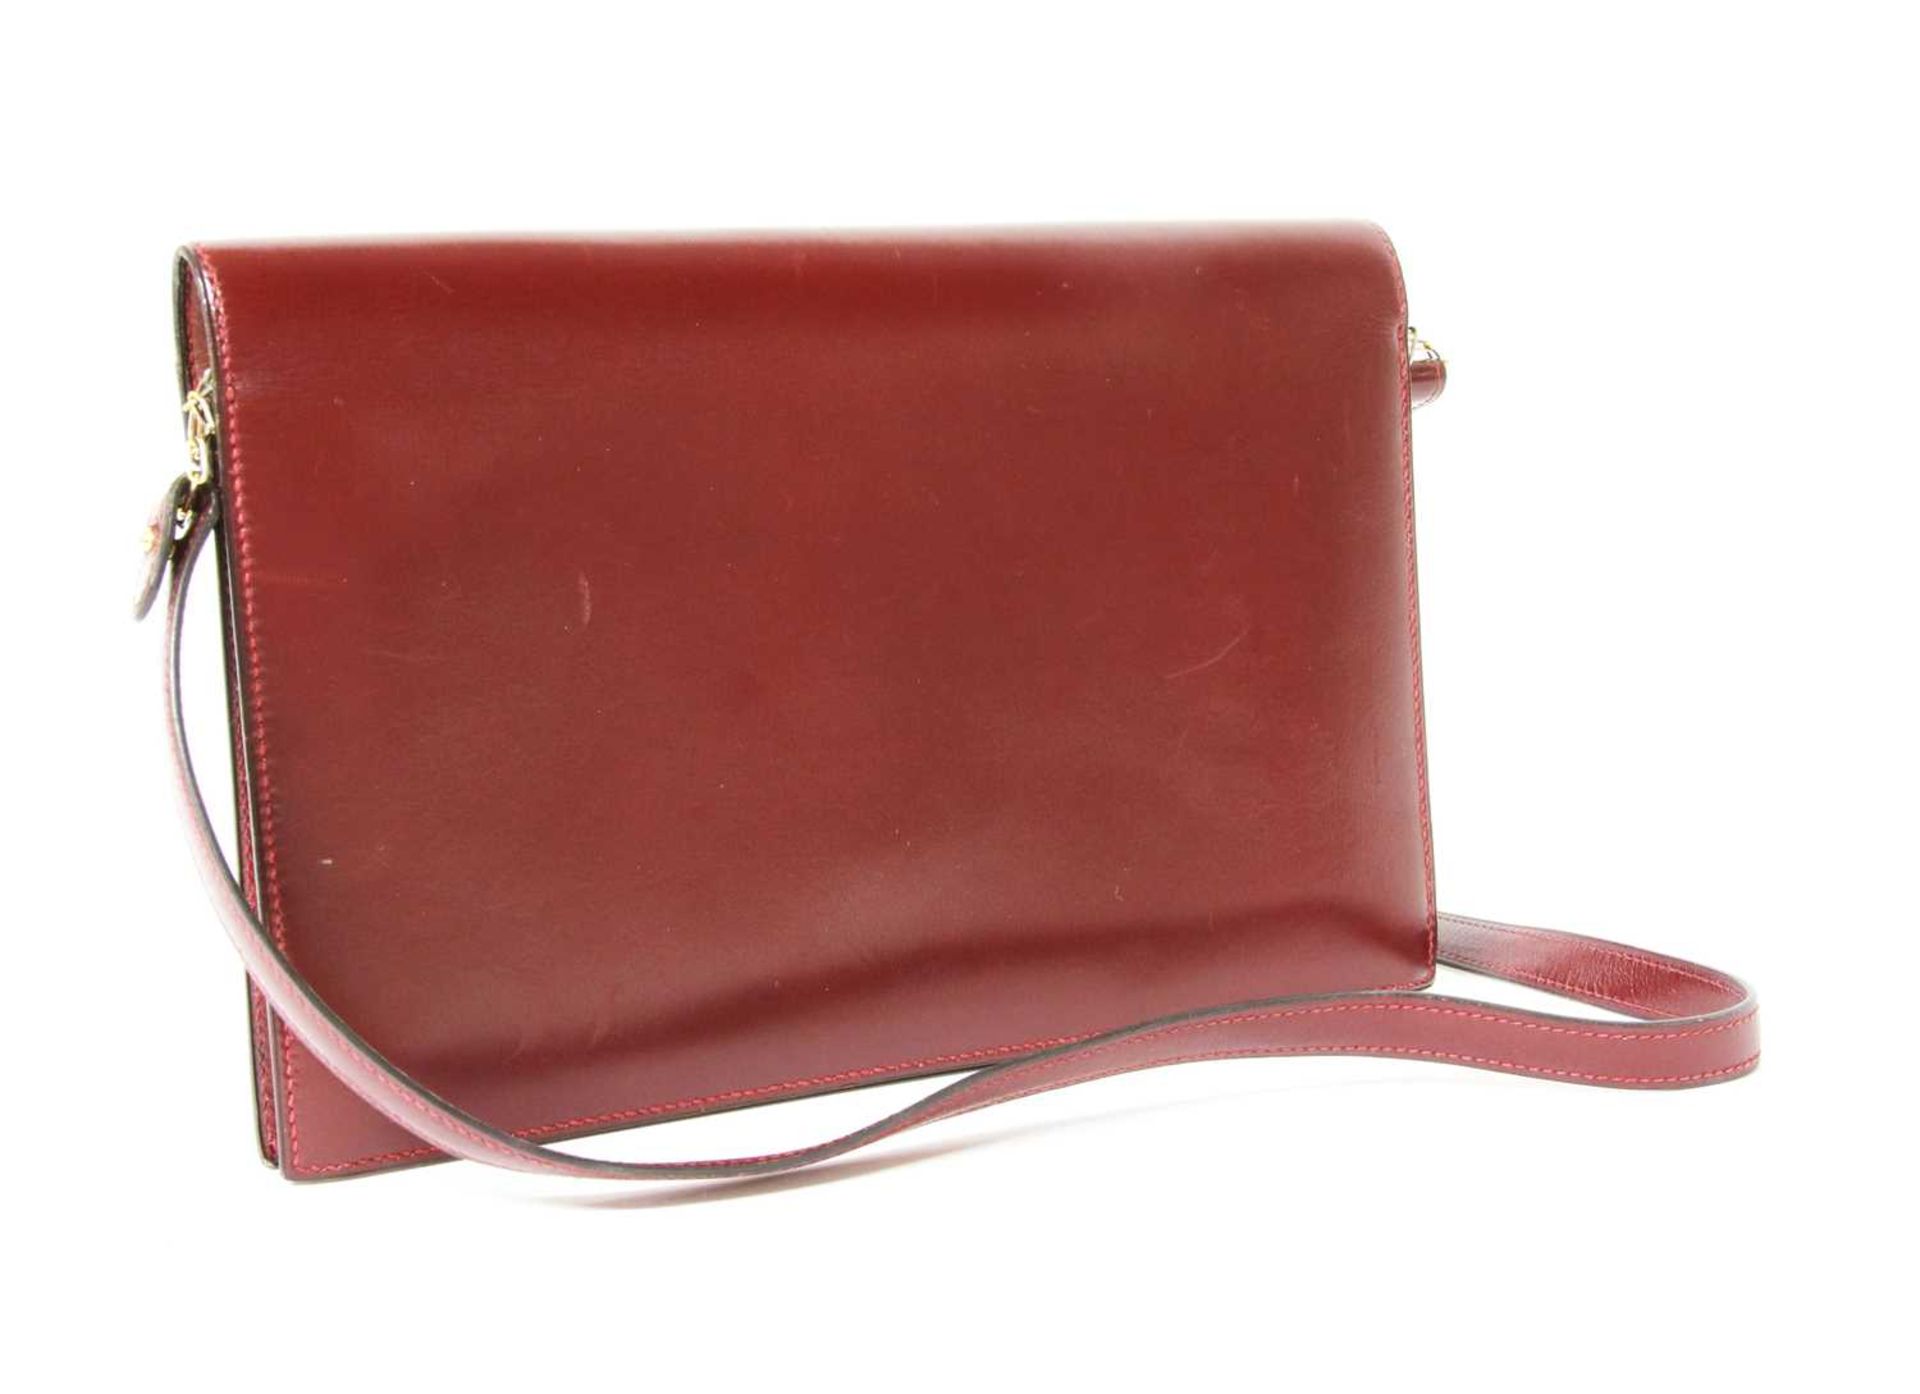 An Hermès 'Lydie' red clutch bag, - Image 2 of 6